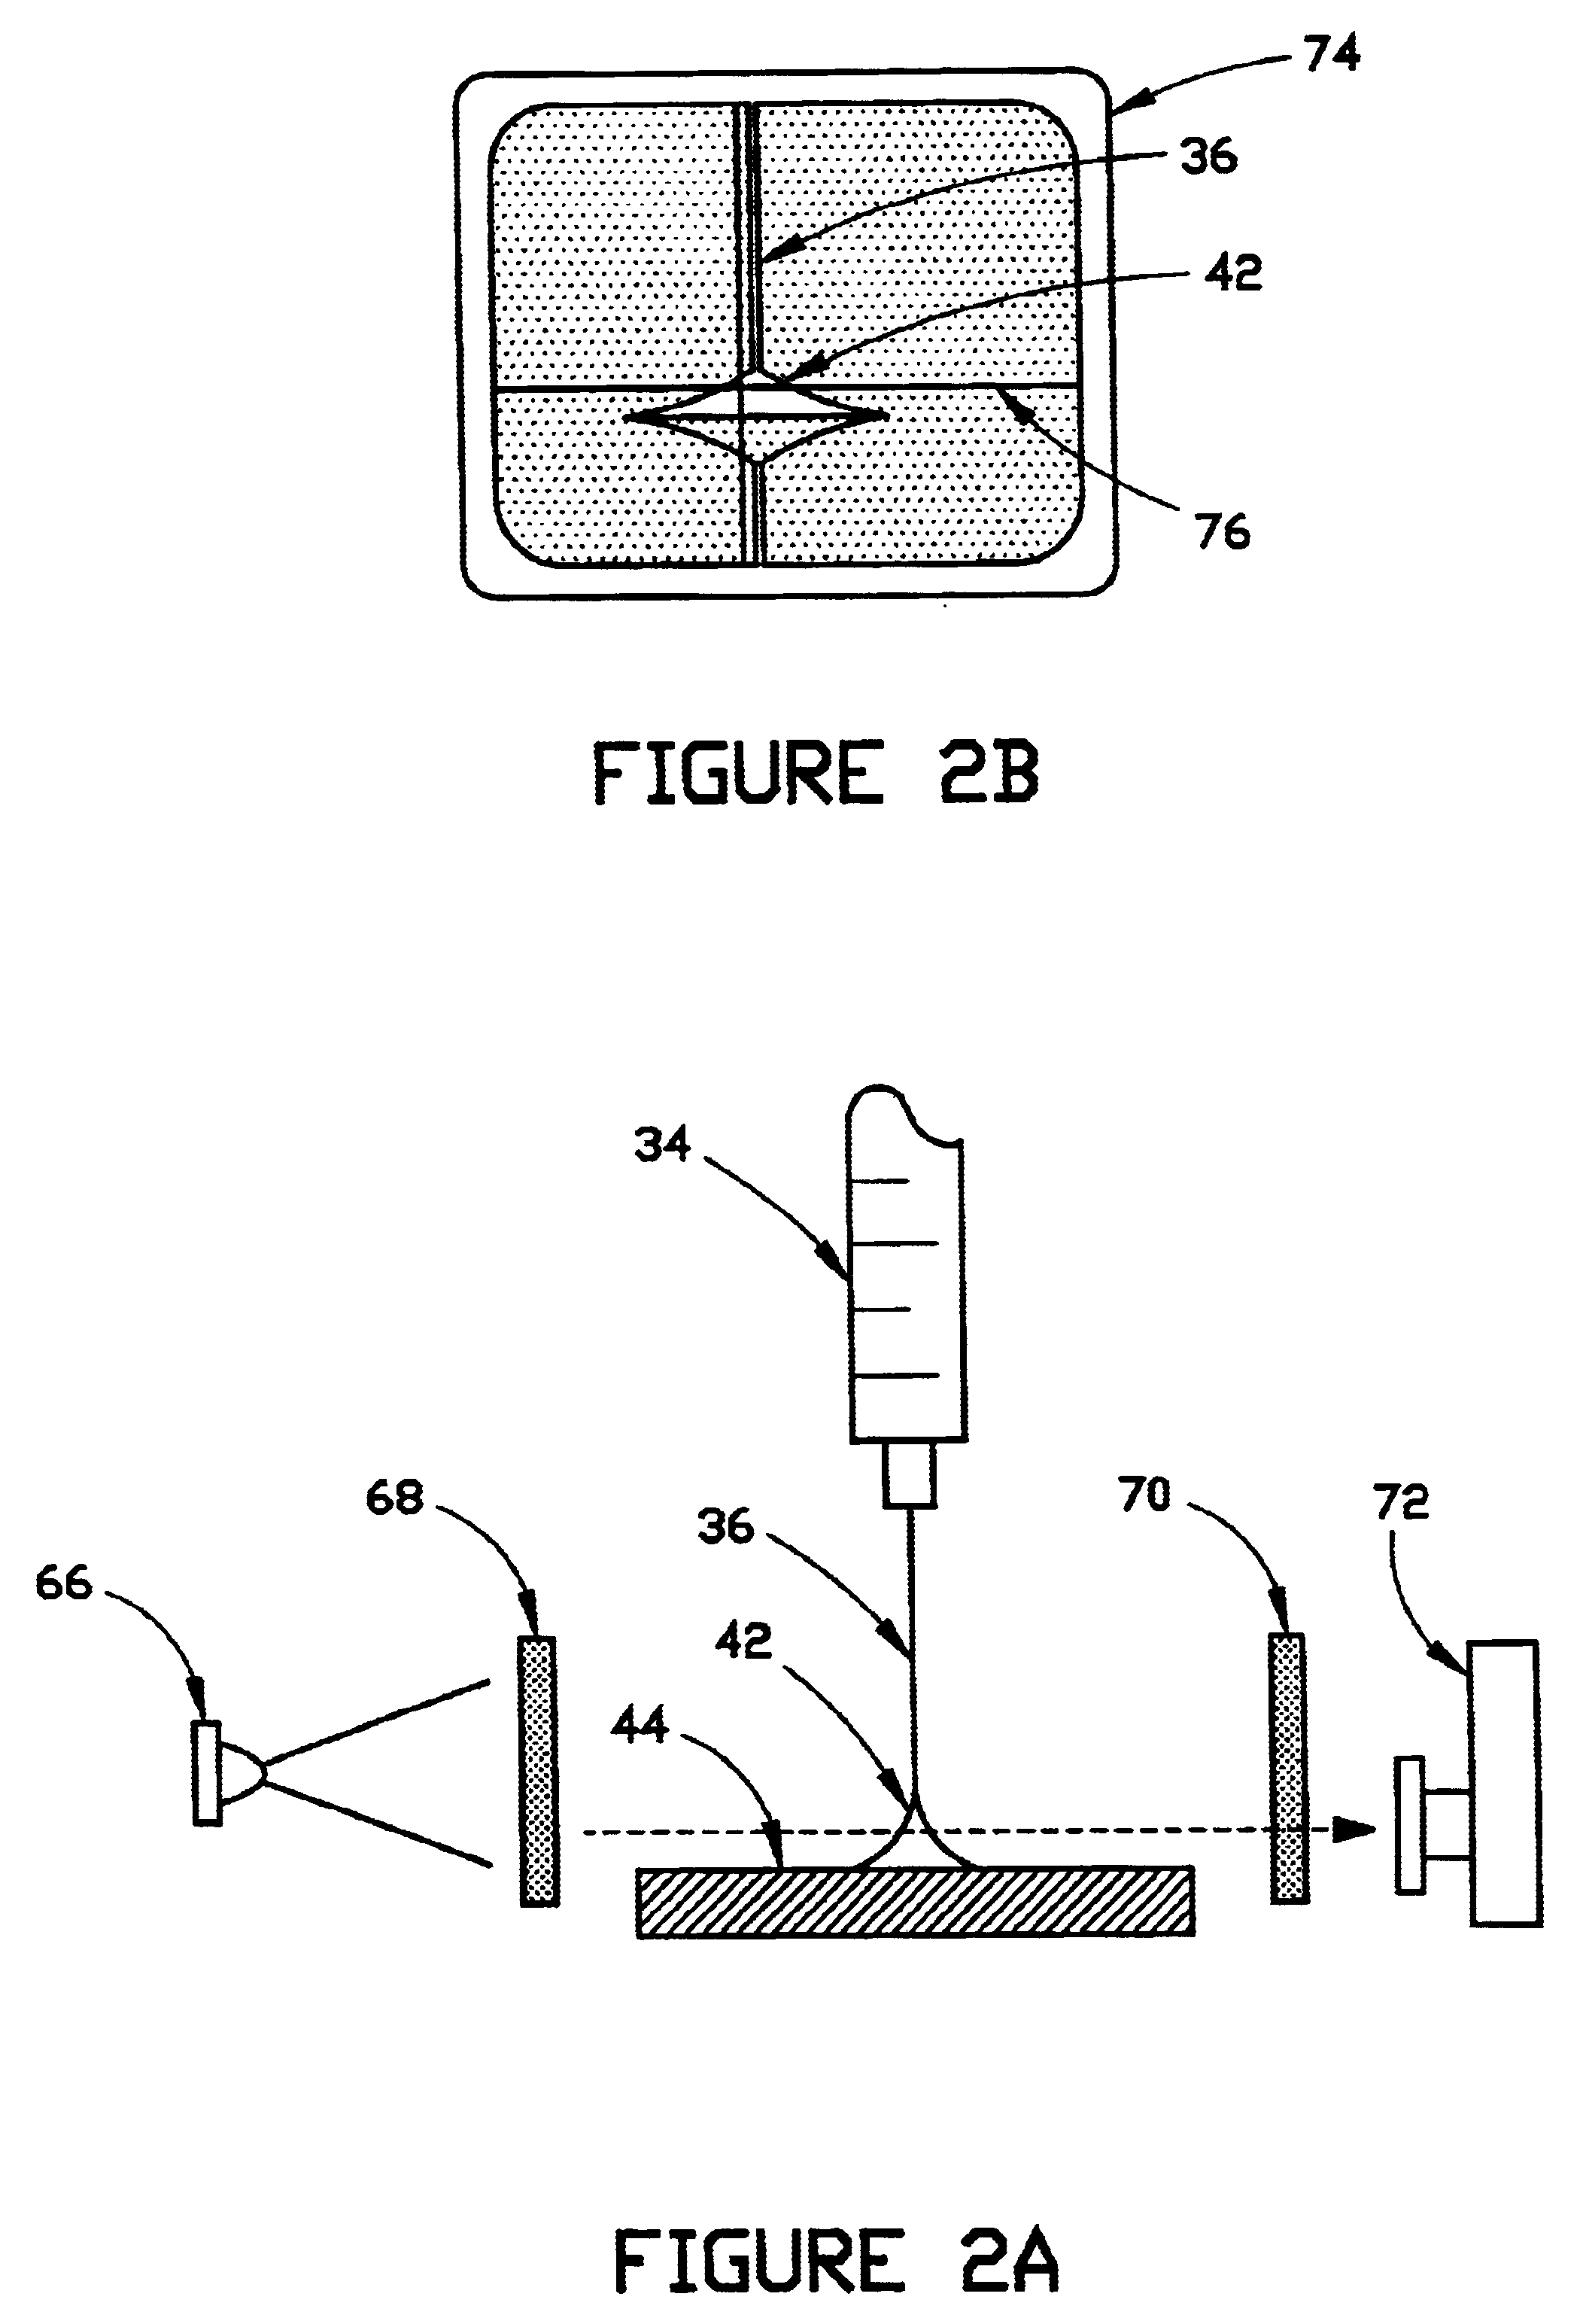 Micro liquid evaporator